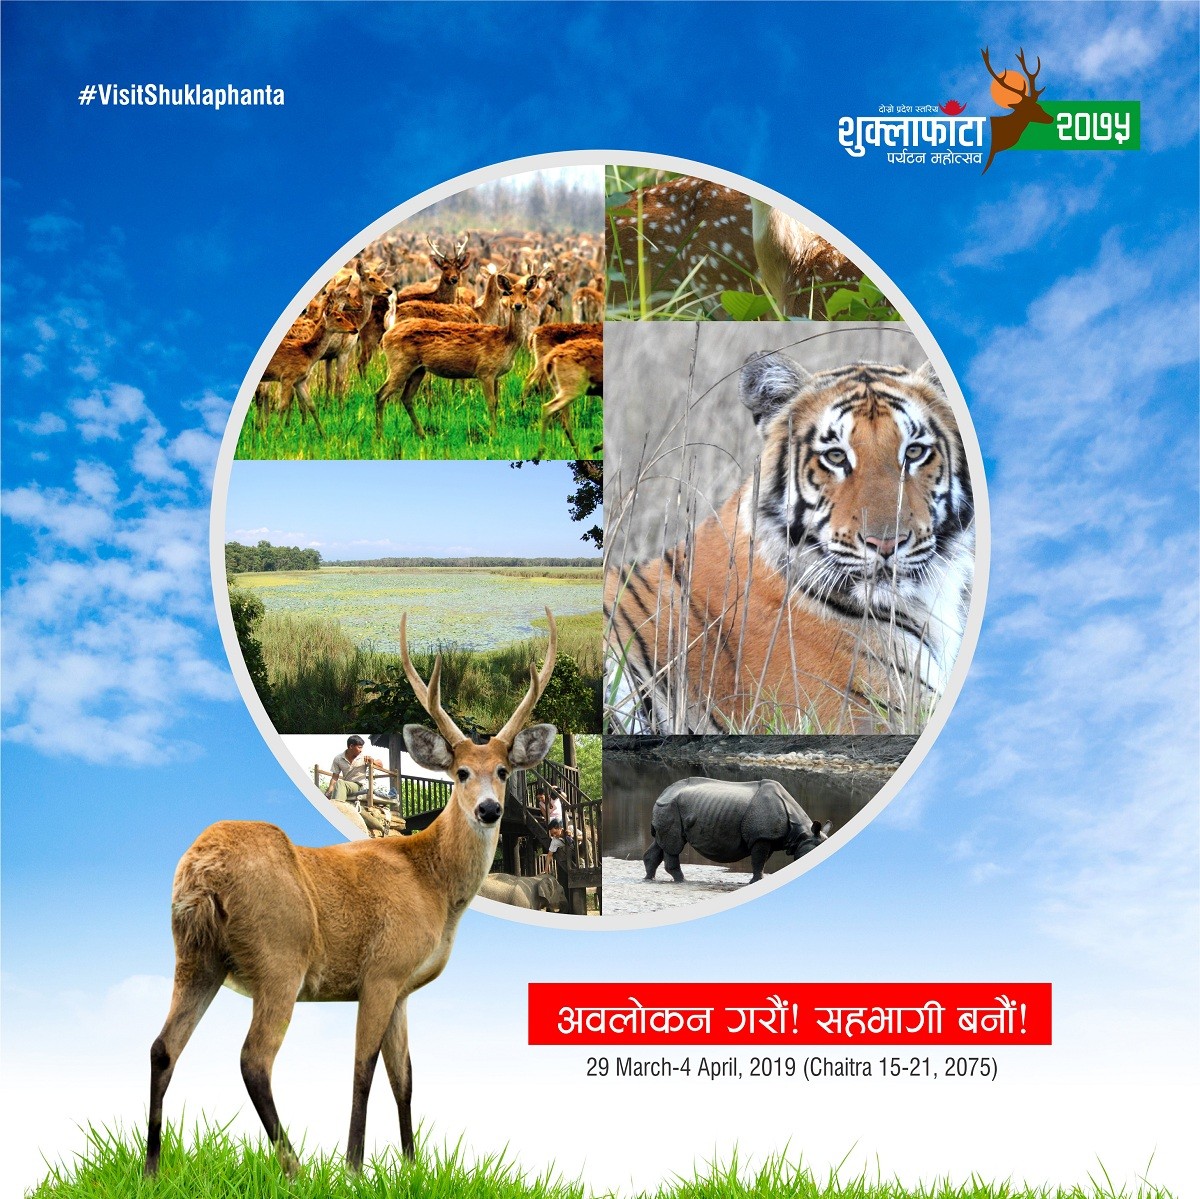 कञ्चनपुरमा दोस्रो प्रदेश स्तरिय शुक्लाफाँटा पर्यटन महोत्सव सुरु